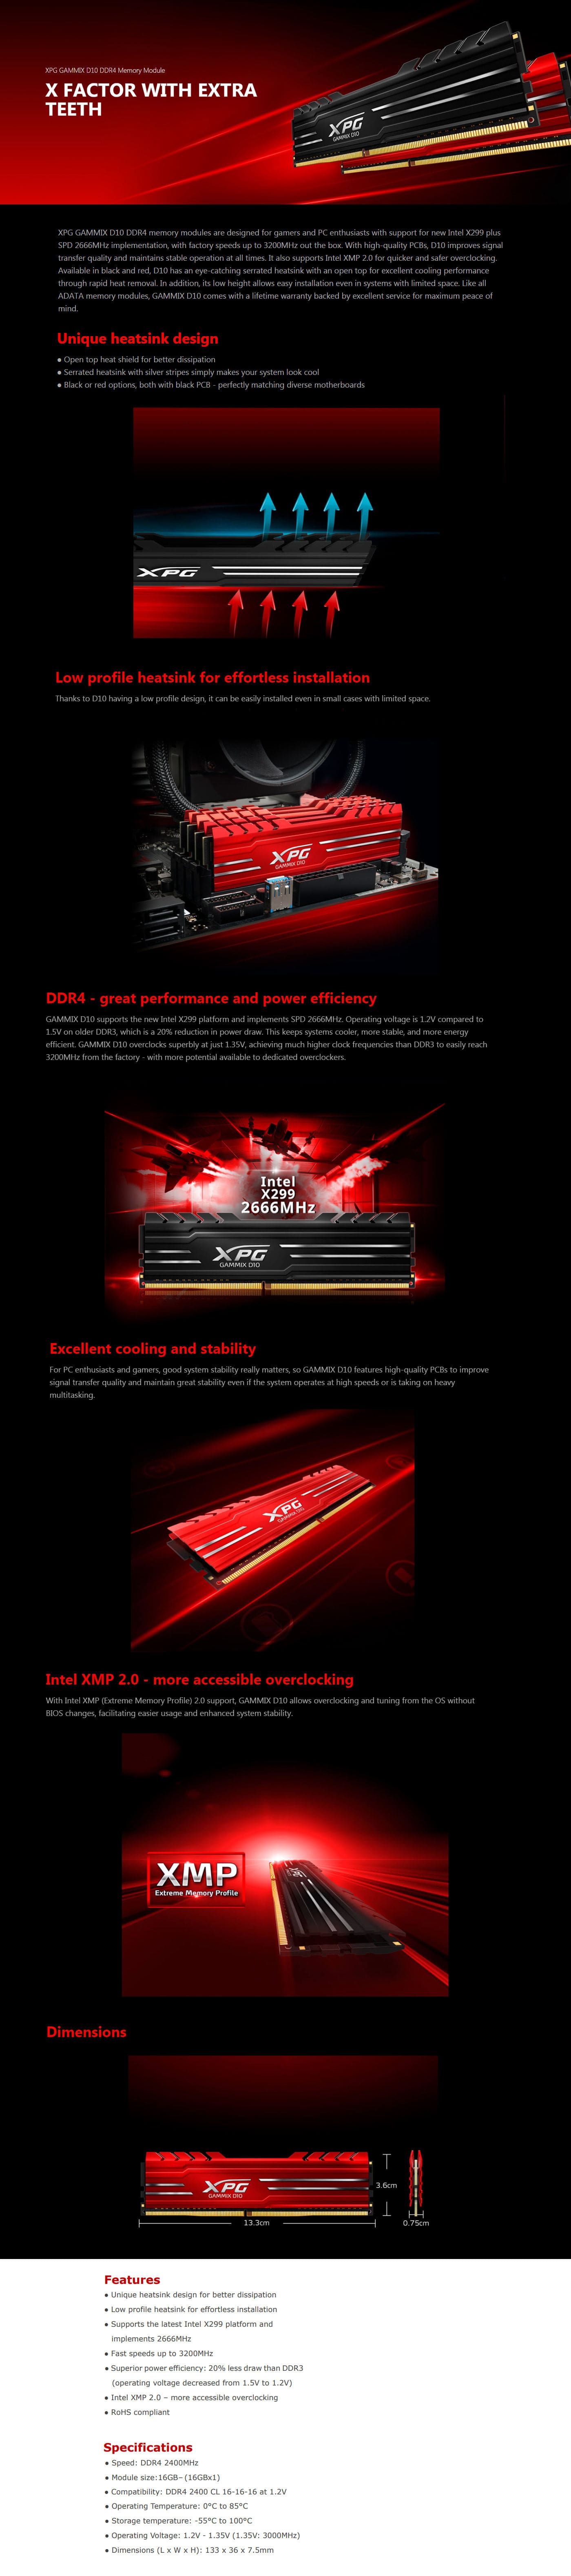  Buy Online Adata XPG GAMMIX D10 16GB (1 x 16GB) DDR4 2400Mhz Memory - Red (AX4U2400316G16-SRG)